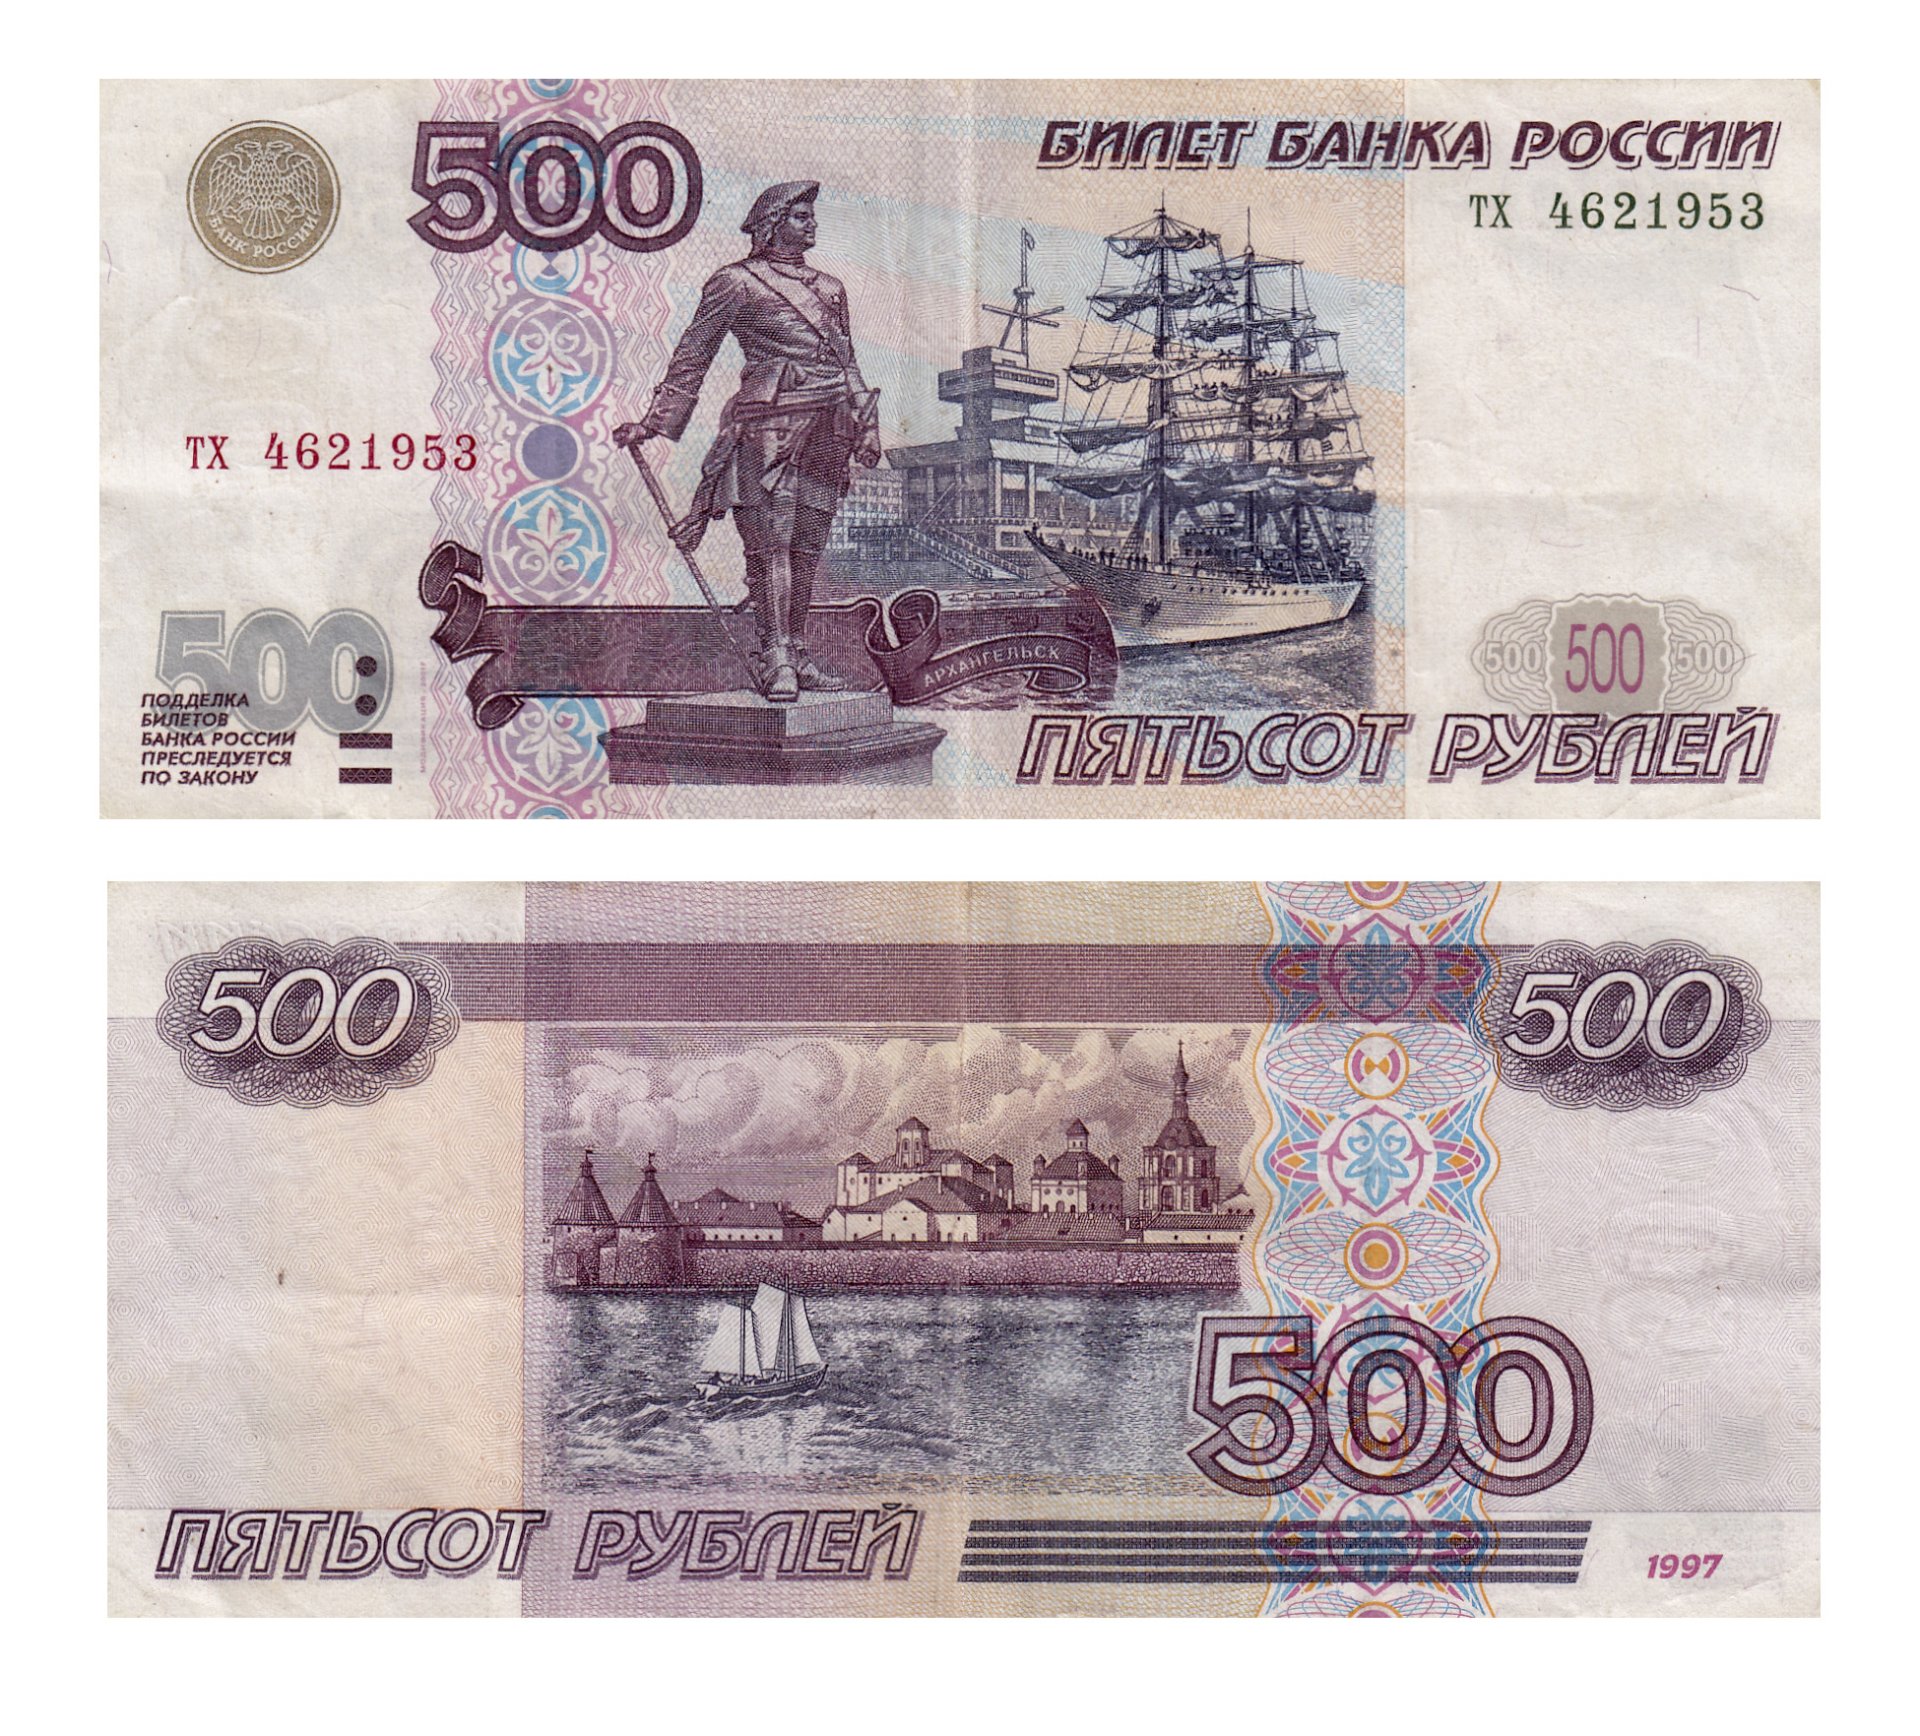 500 рублей словами